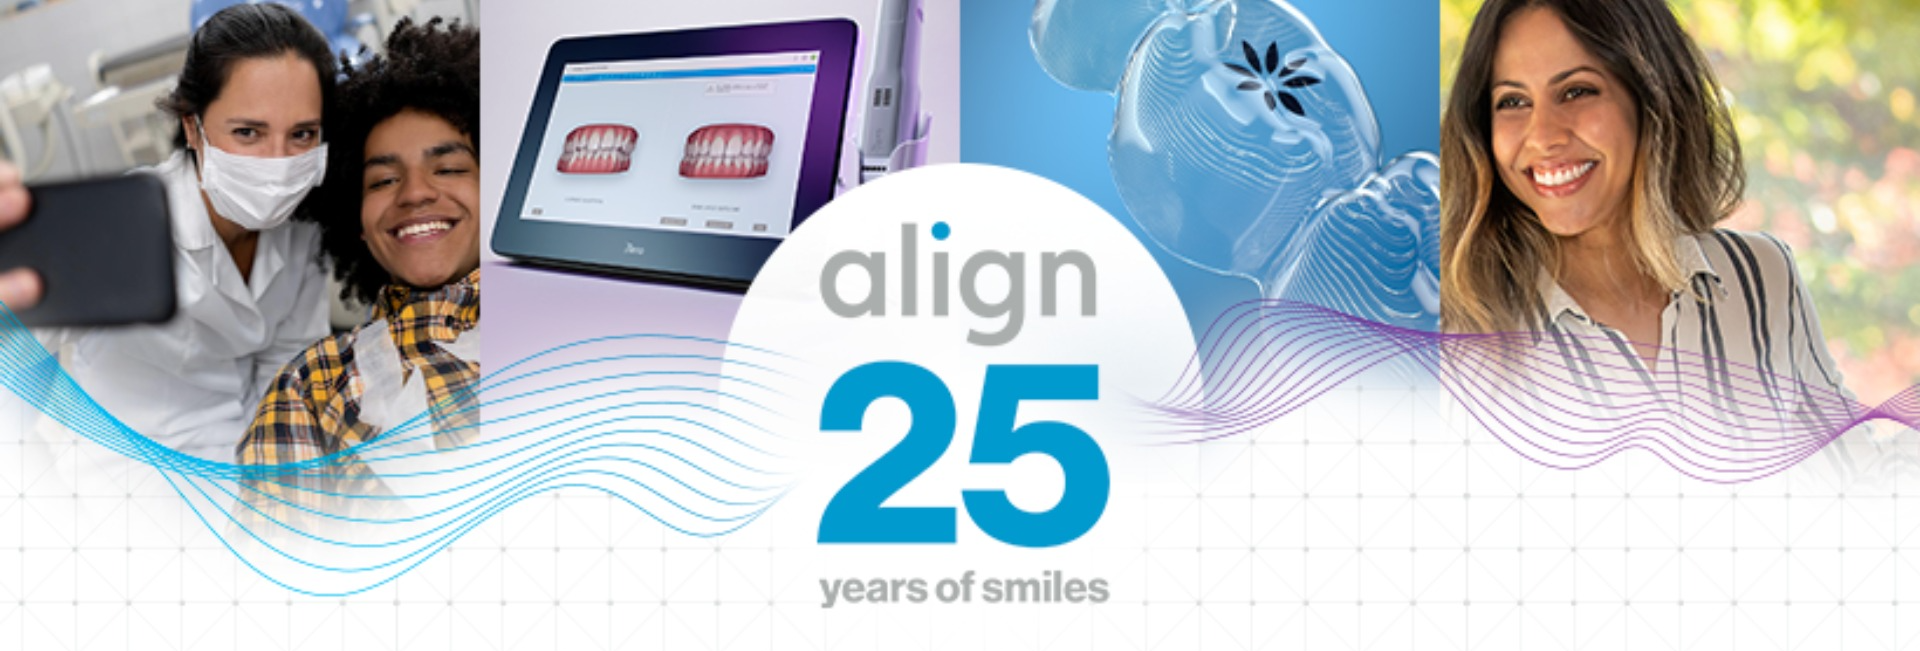 Align Technology - Dental Tribune Austria Business Archive - Über uns